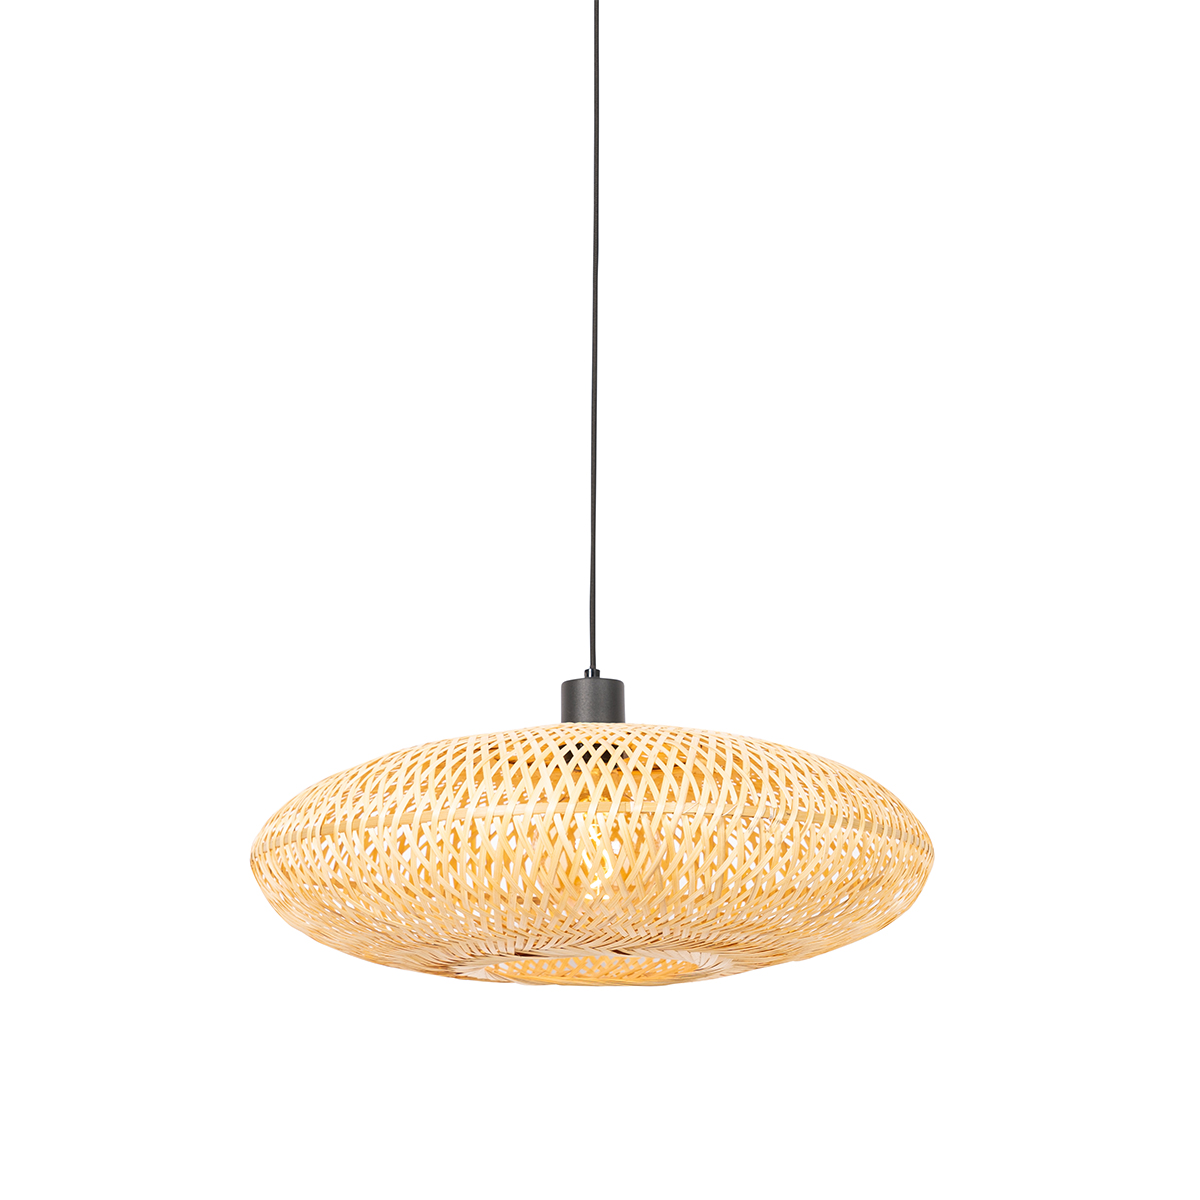 Lampa orientala suspendata bambus 50 cm - Ostrava